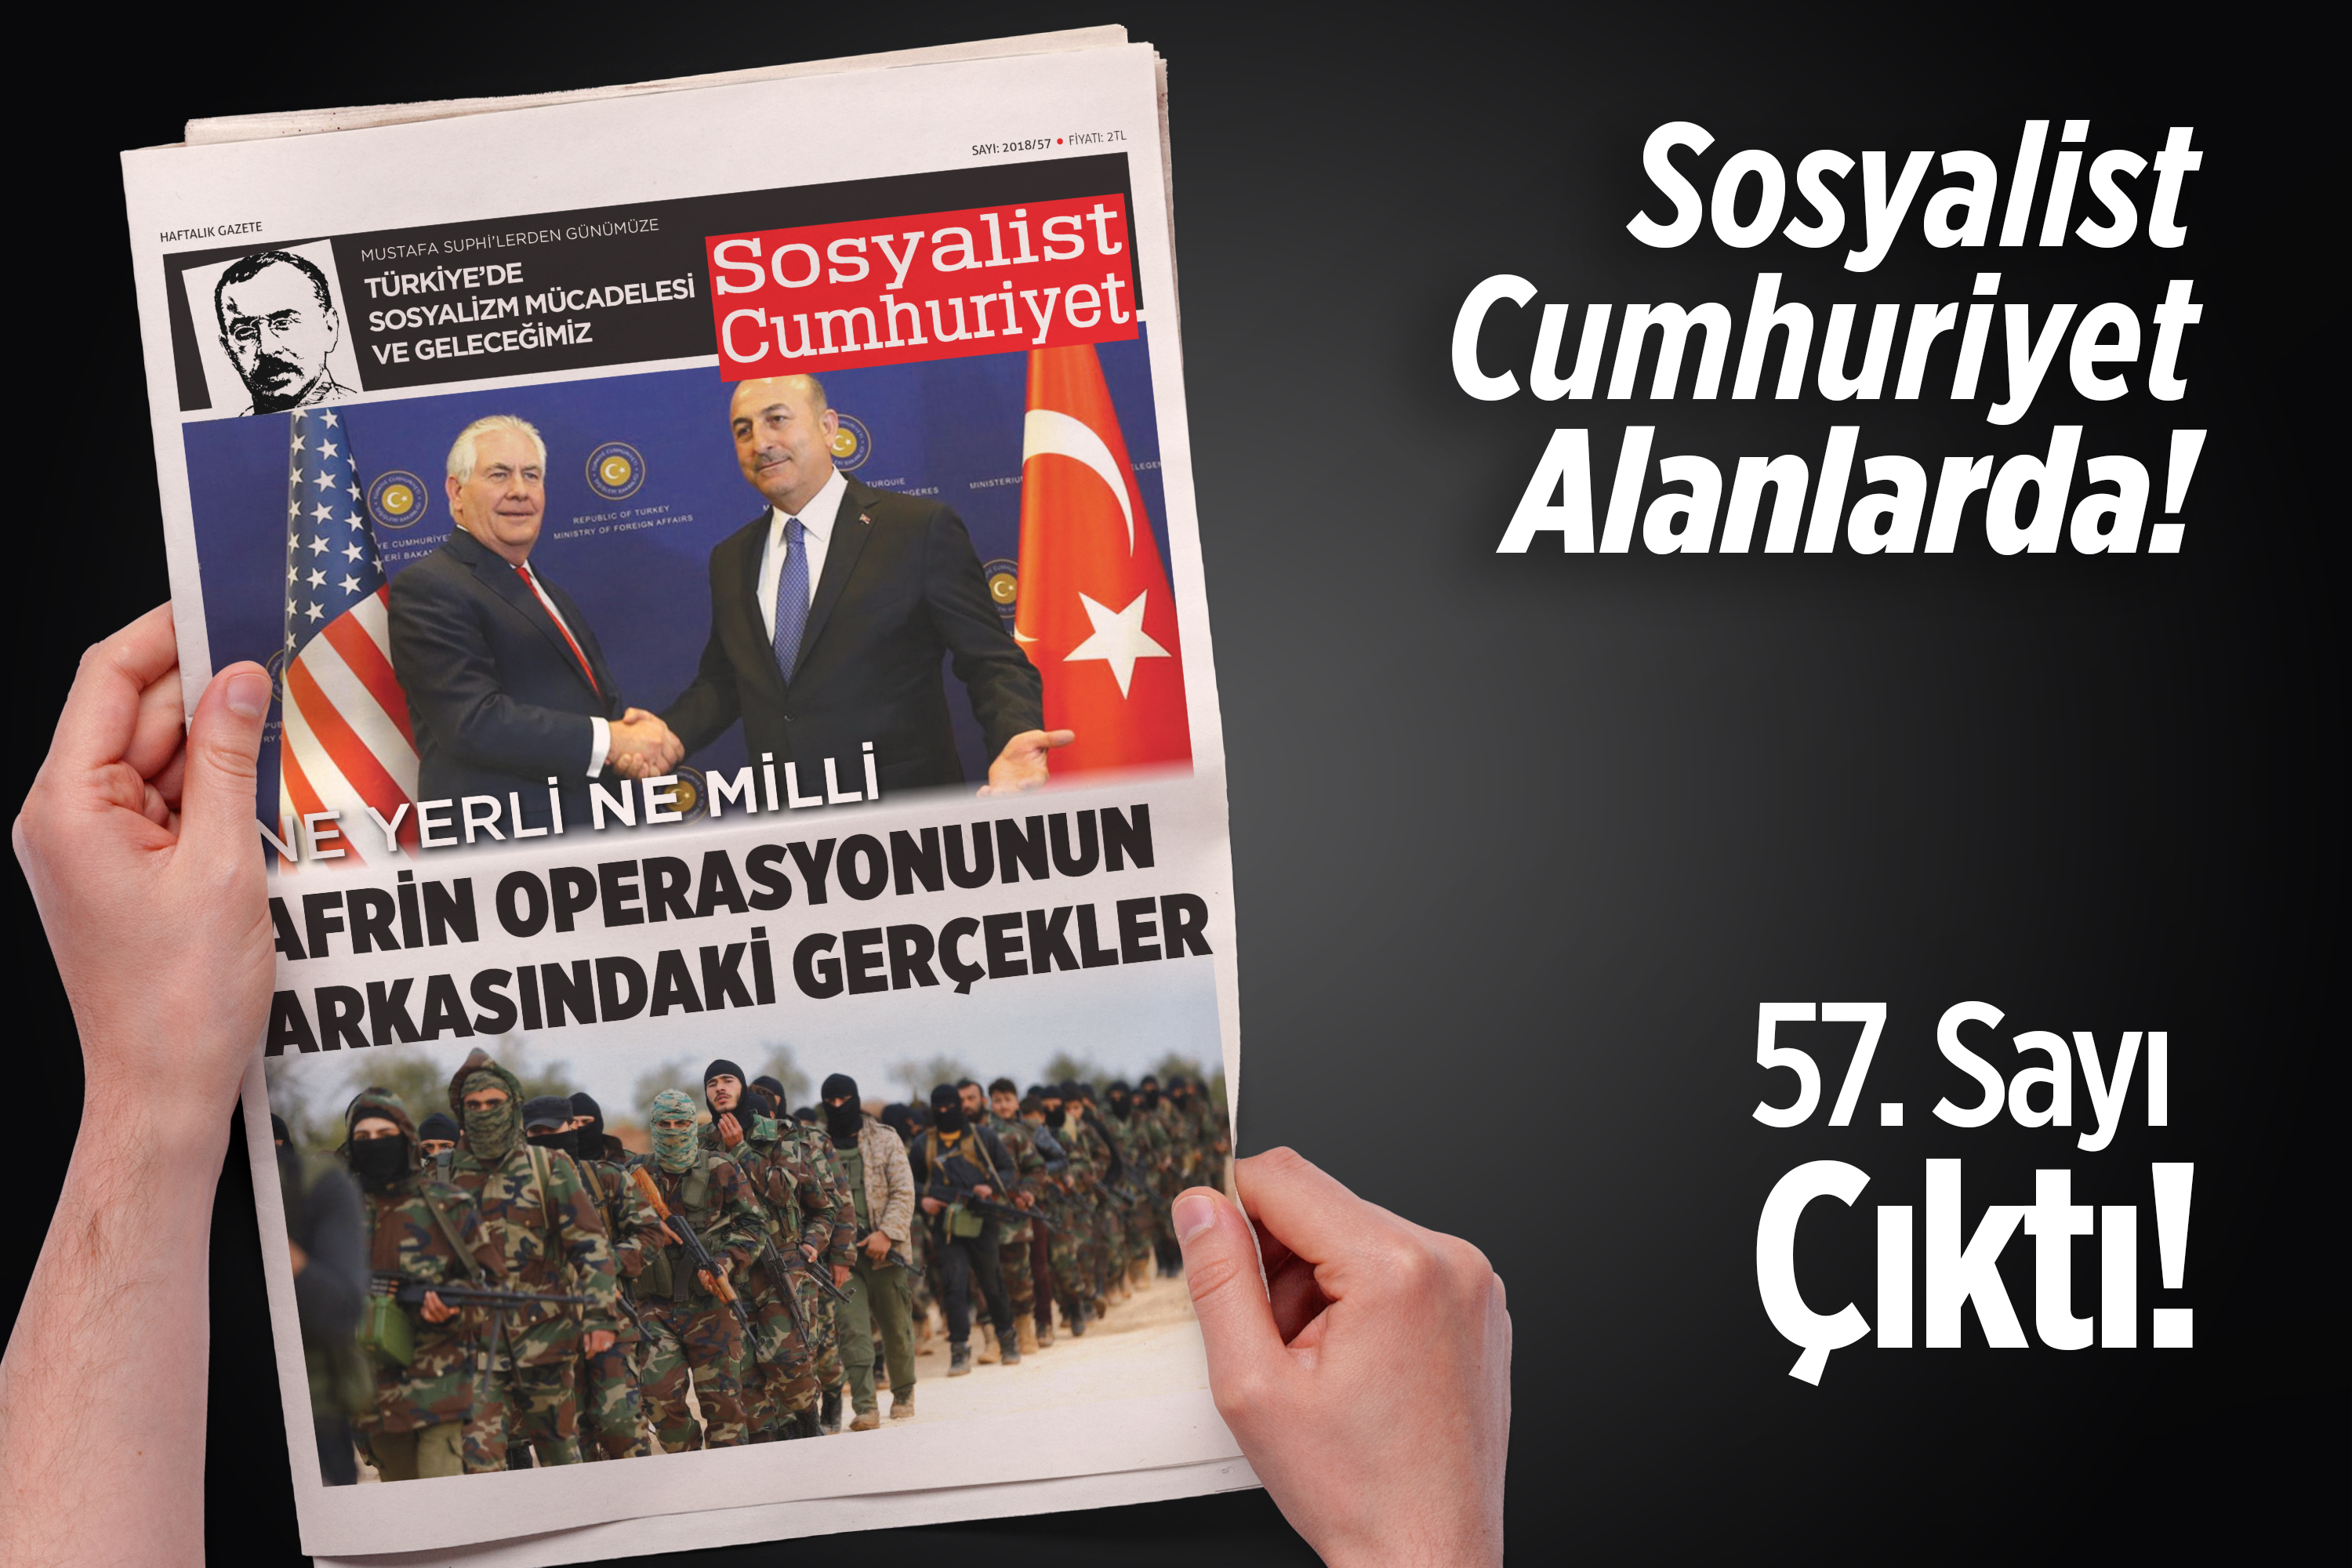 Sosyalist Cumhuriyet “Ne yerli ne milli: Afrin operasyonun arkasındaki gerçekler” manşetiyle çıktı